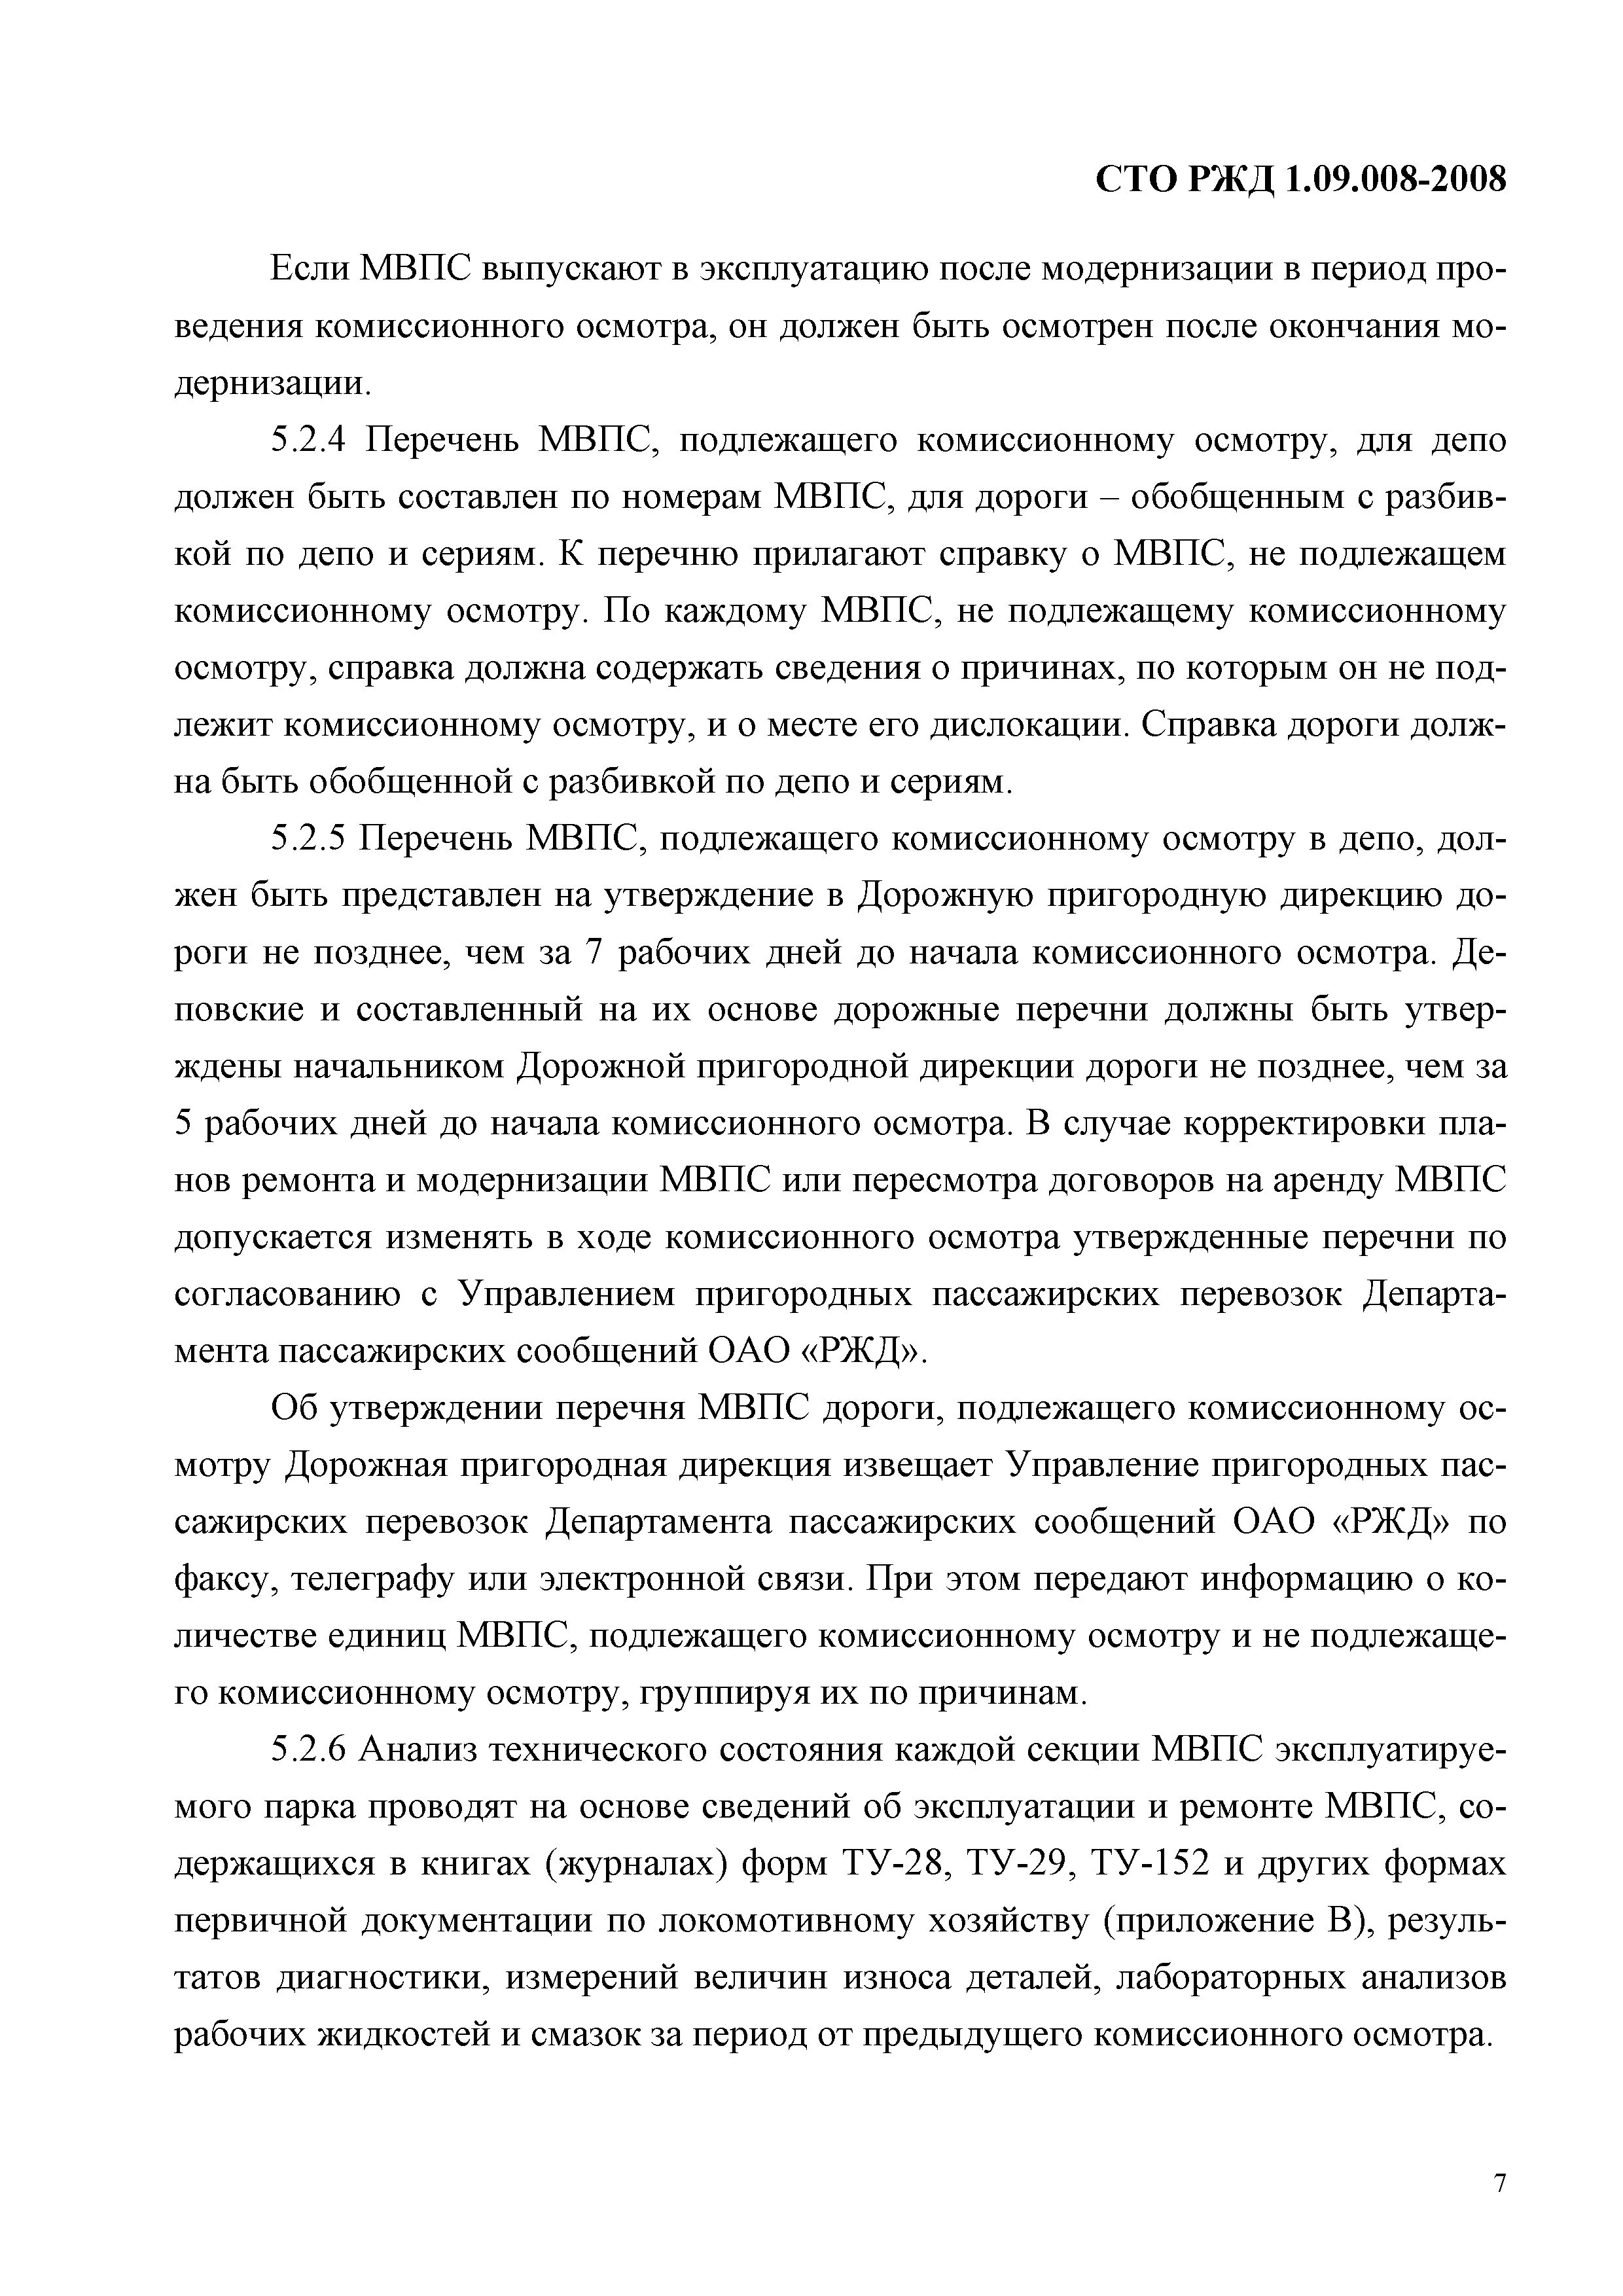 СТО РЖД 1.09.008-2008